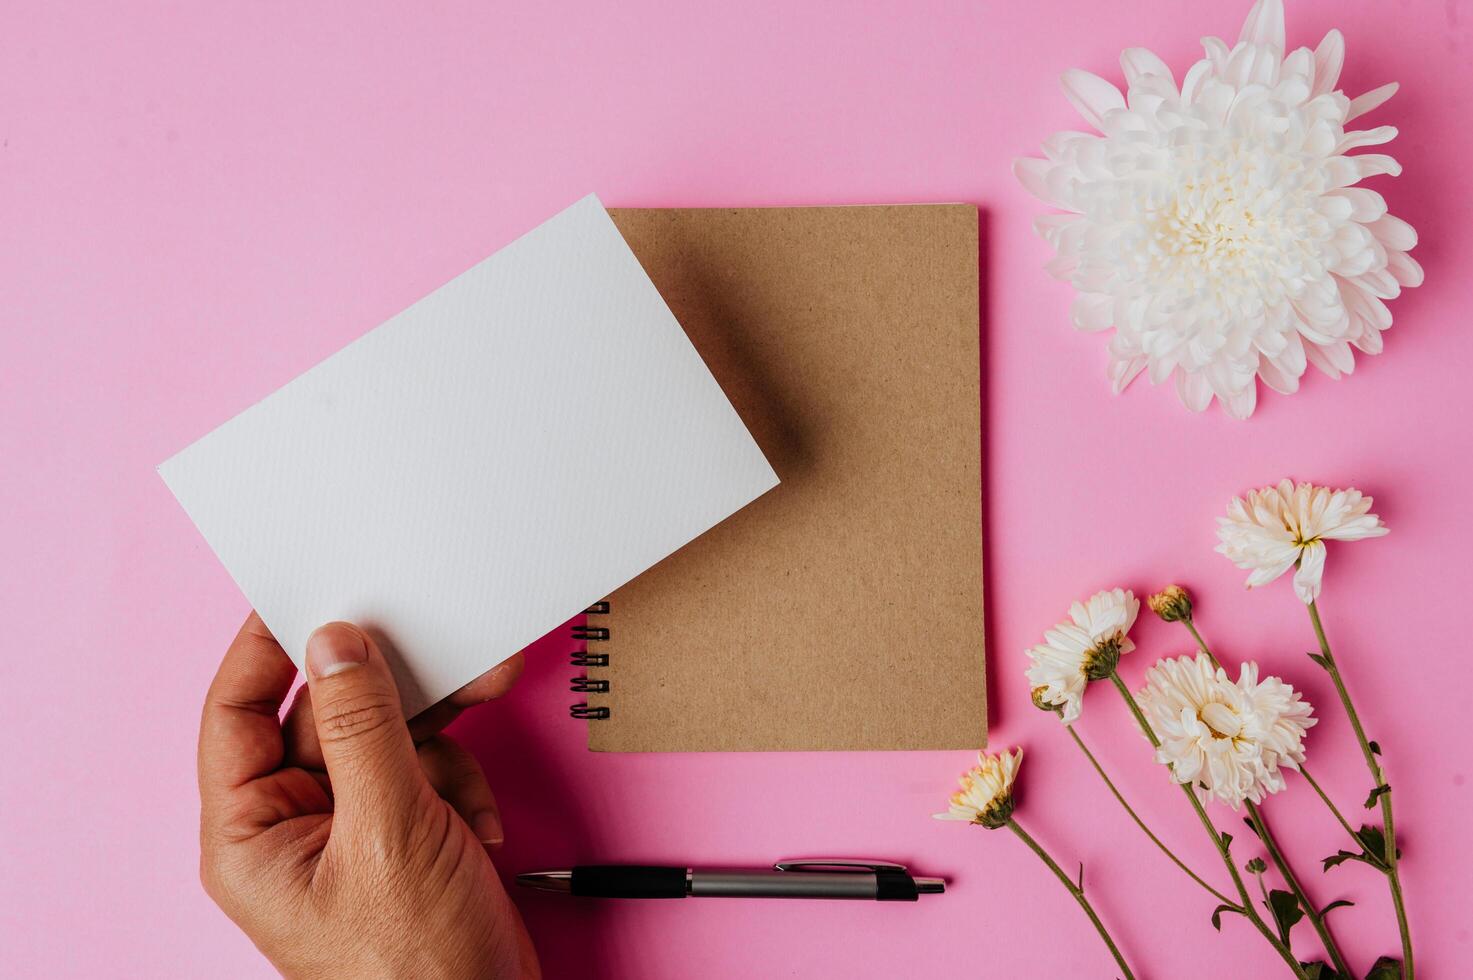 mano que sostiene la tarjeta en blanco, cuaderno, bolígrafo y flor sobre fondo rosa foto